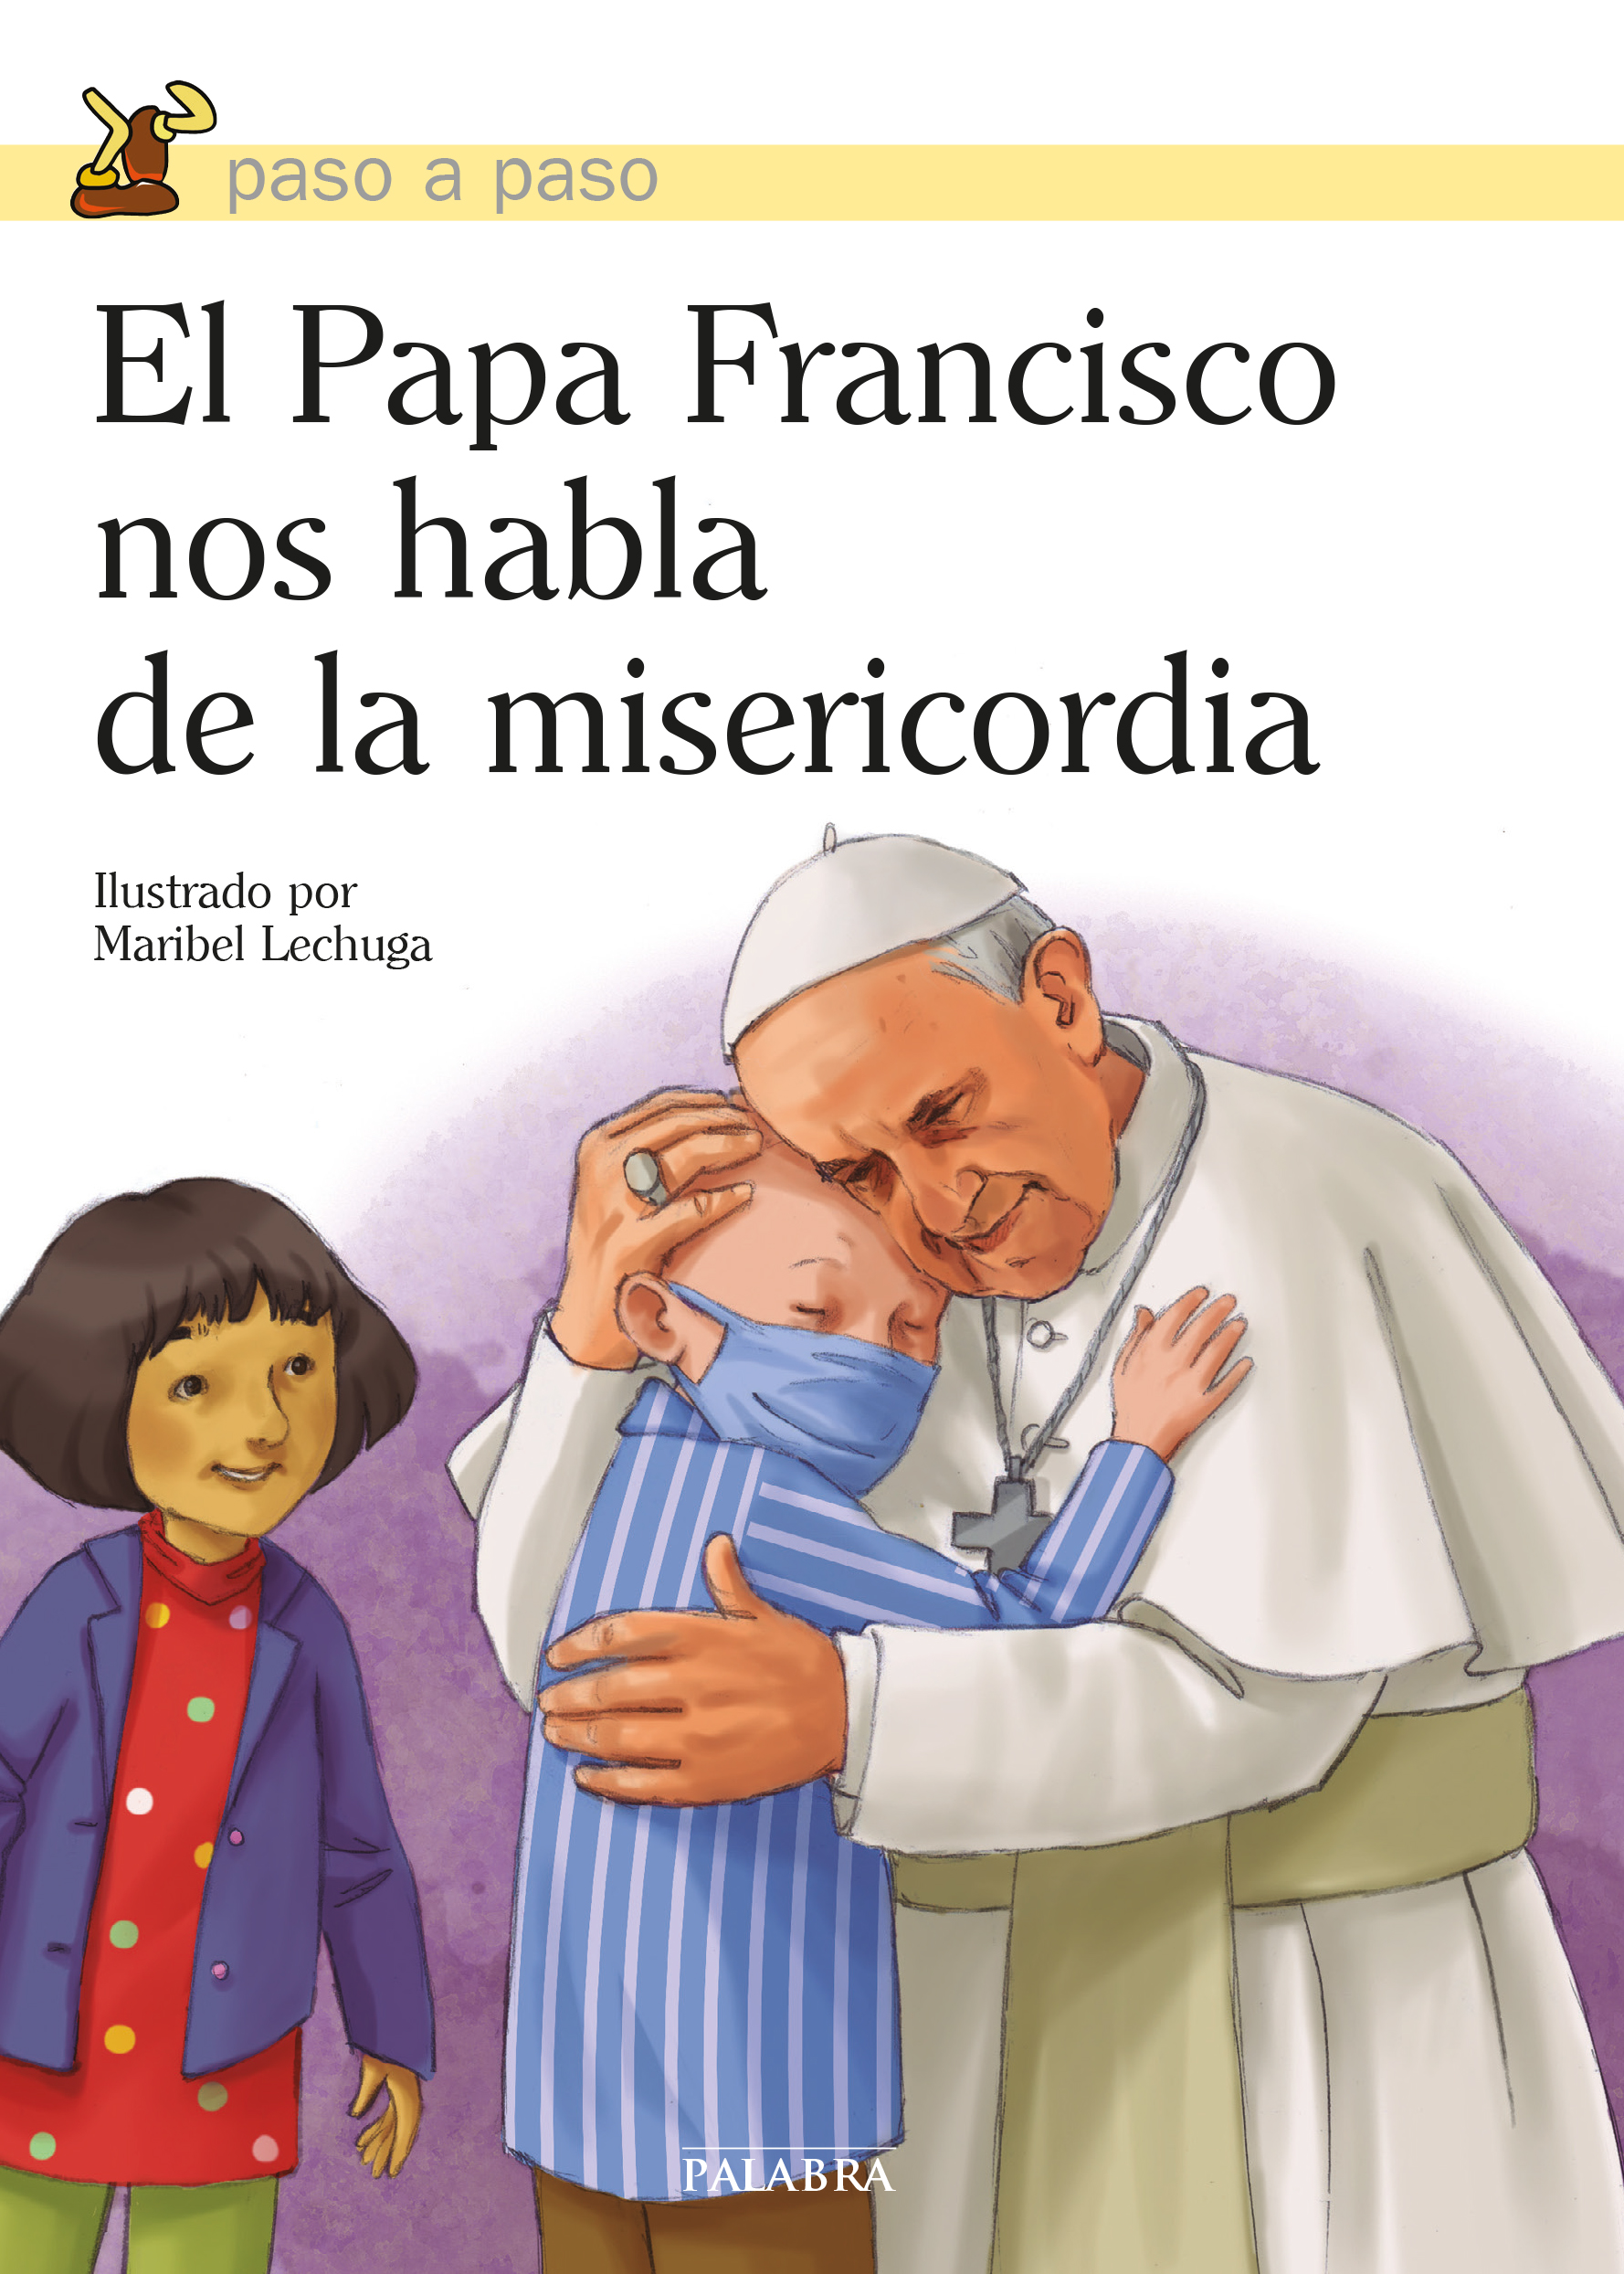 El Papa y la misericordia